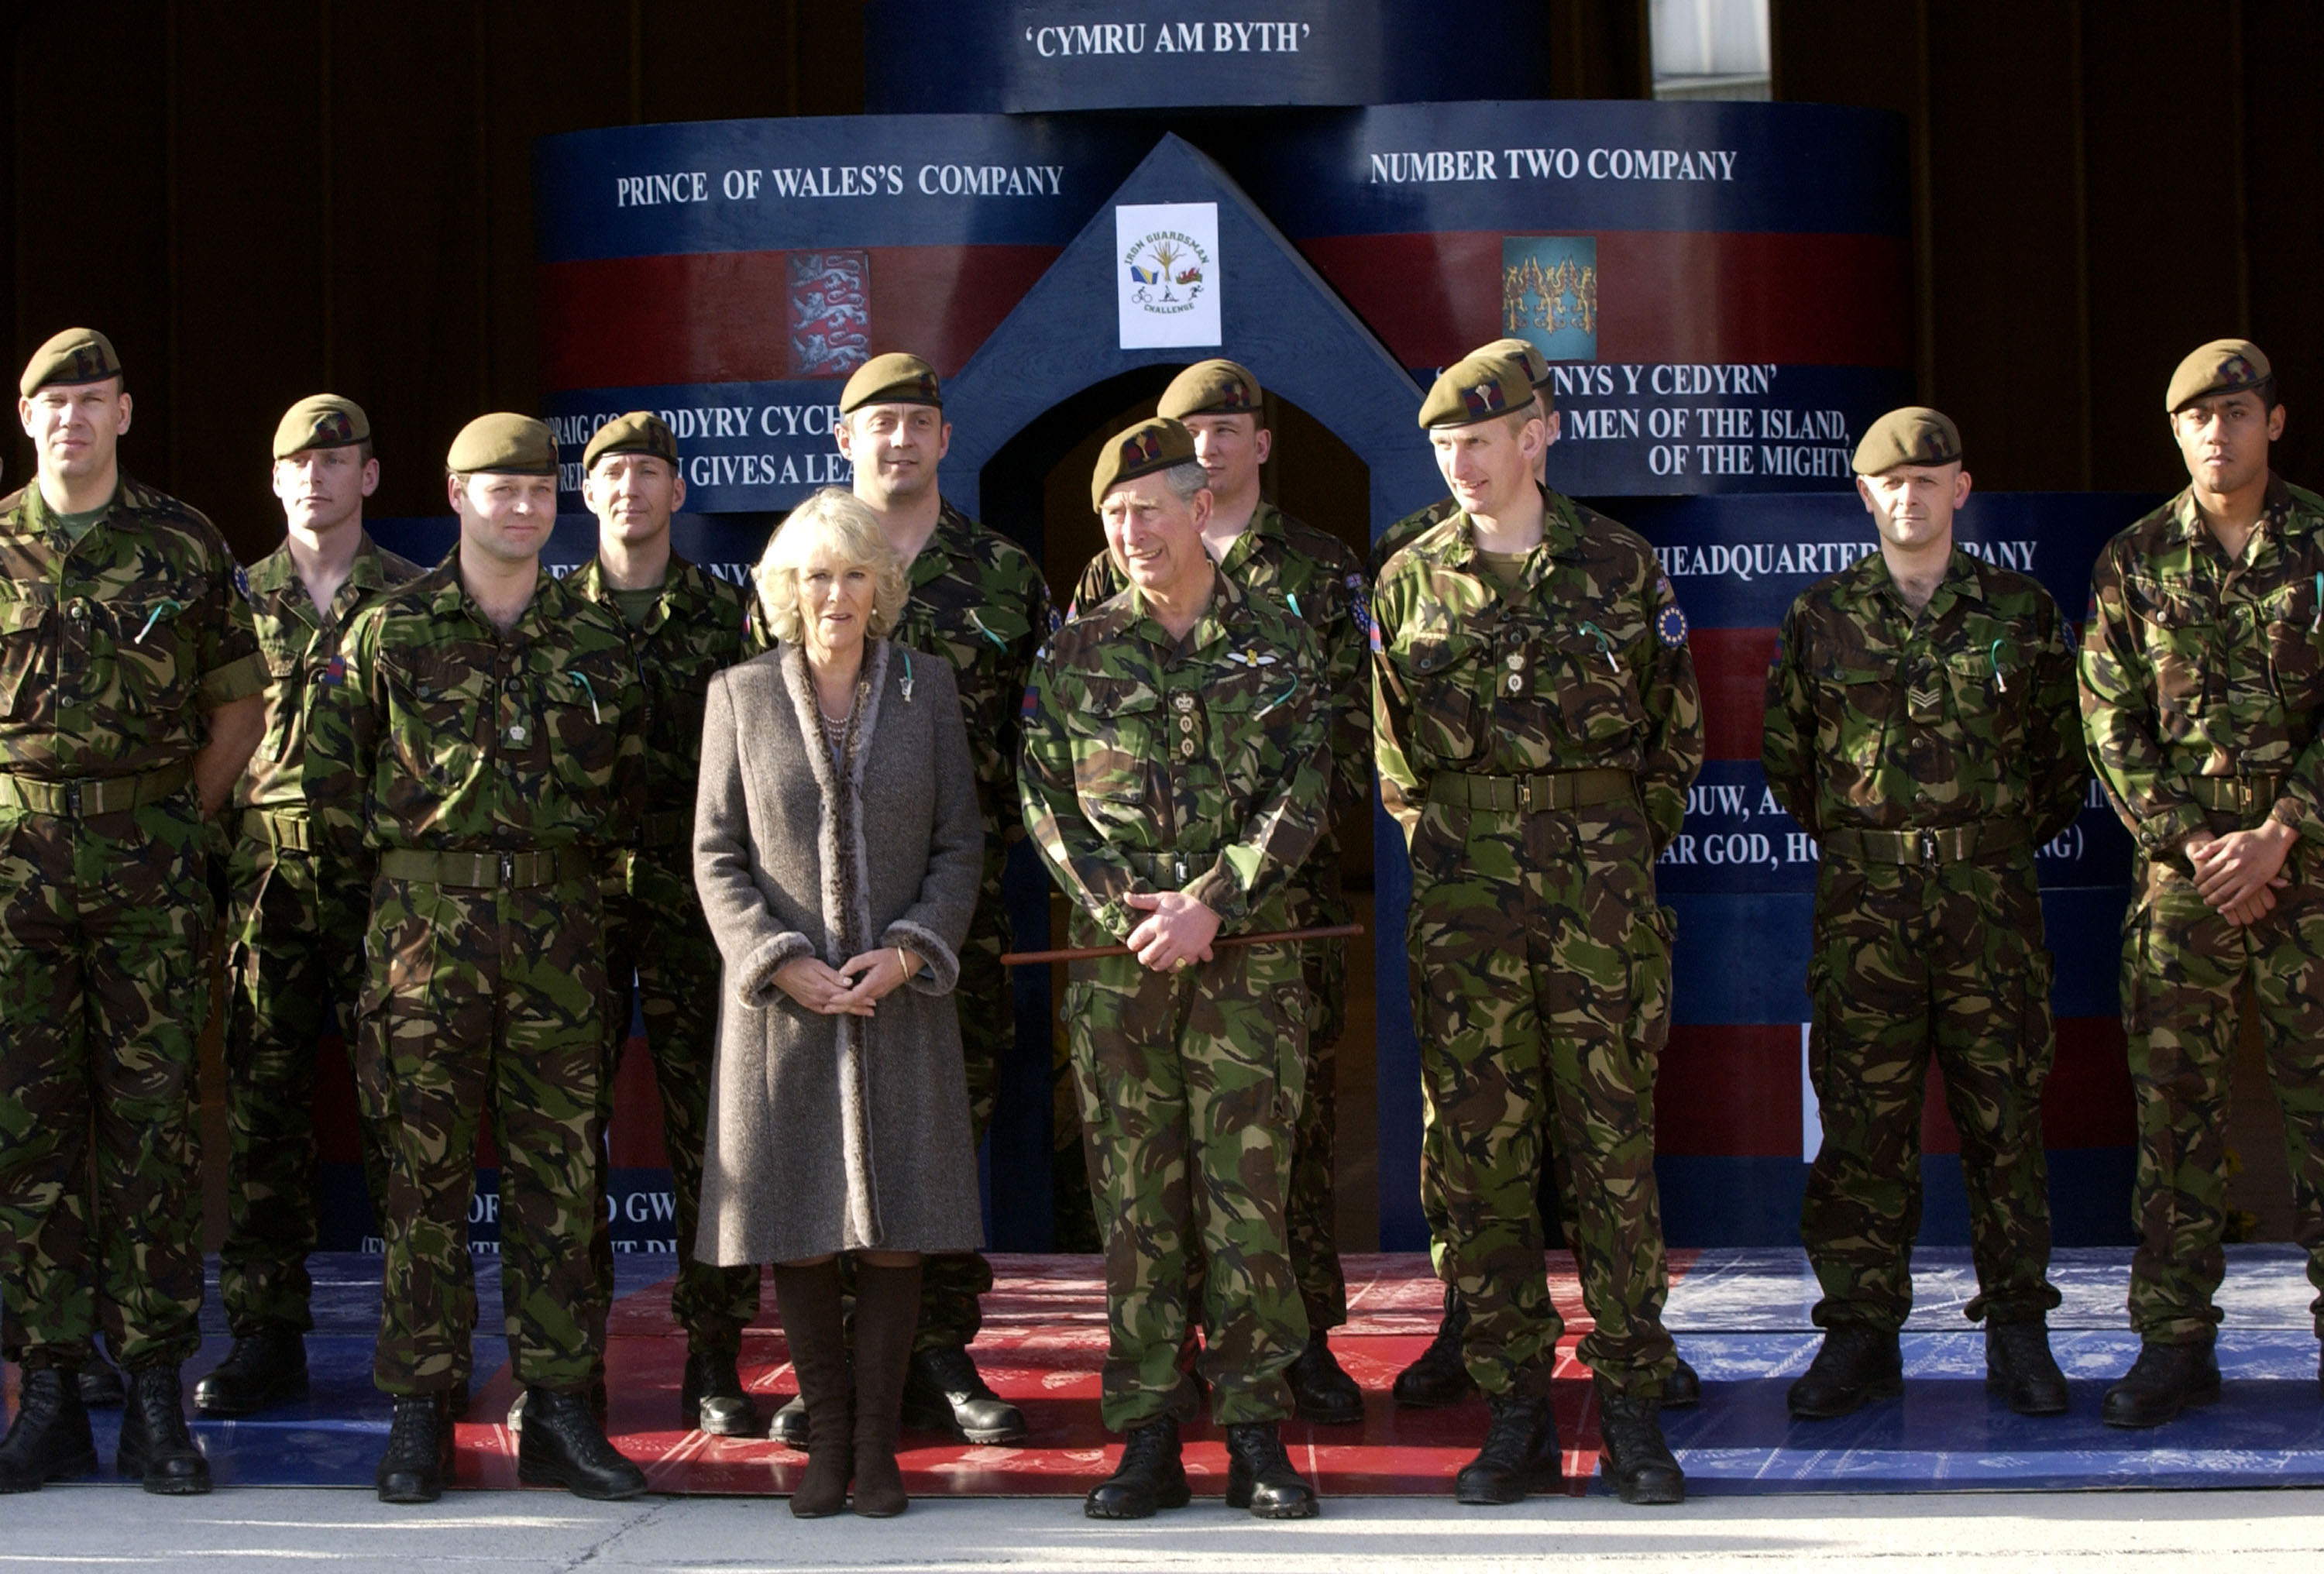 La reine Camilla et le roi Charles III rendent visite aux membres du 1er bataillon des gardes gallois en mission de maintien de la paix à Banja Luka, en Bosnie, le 1er mars 2007 | Source : Getty Images